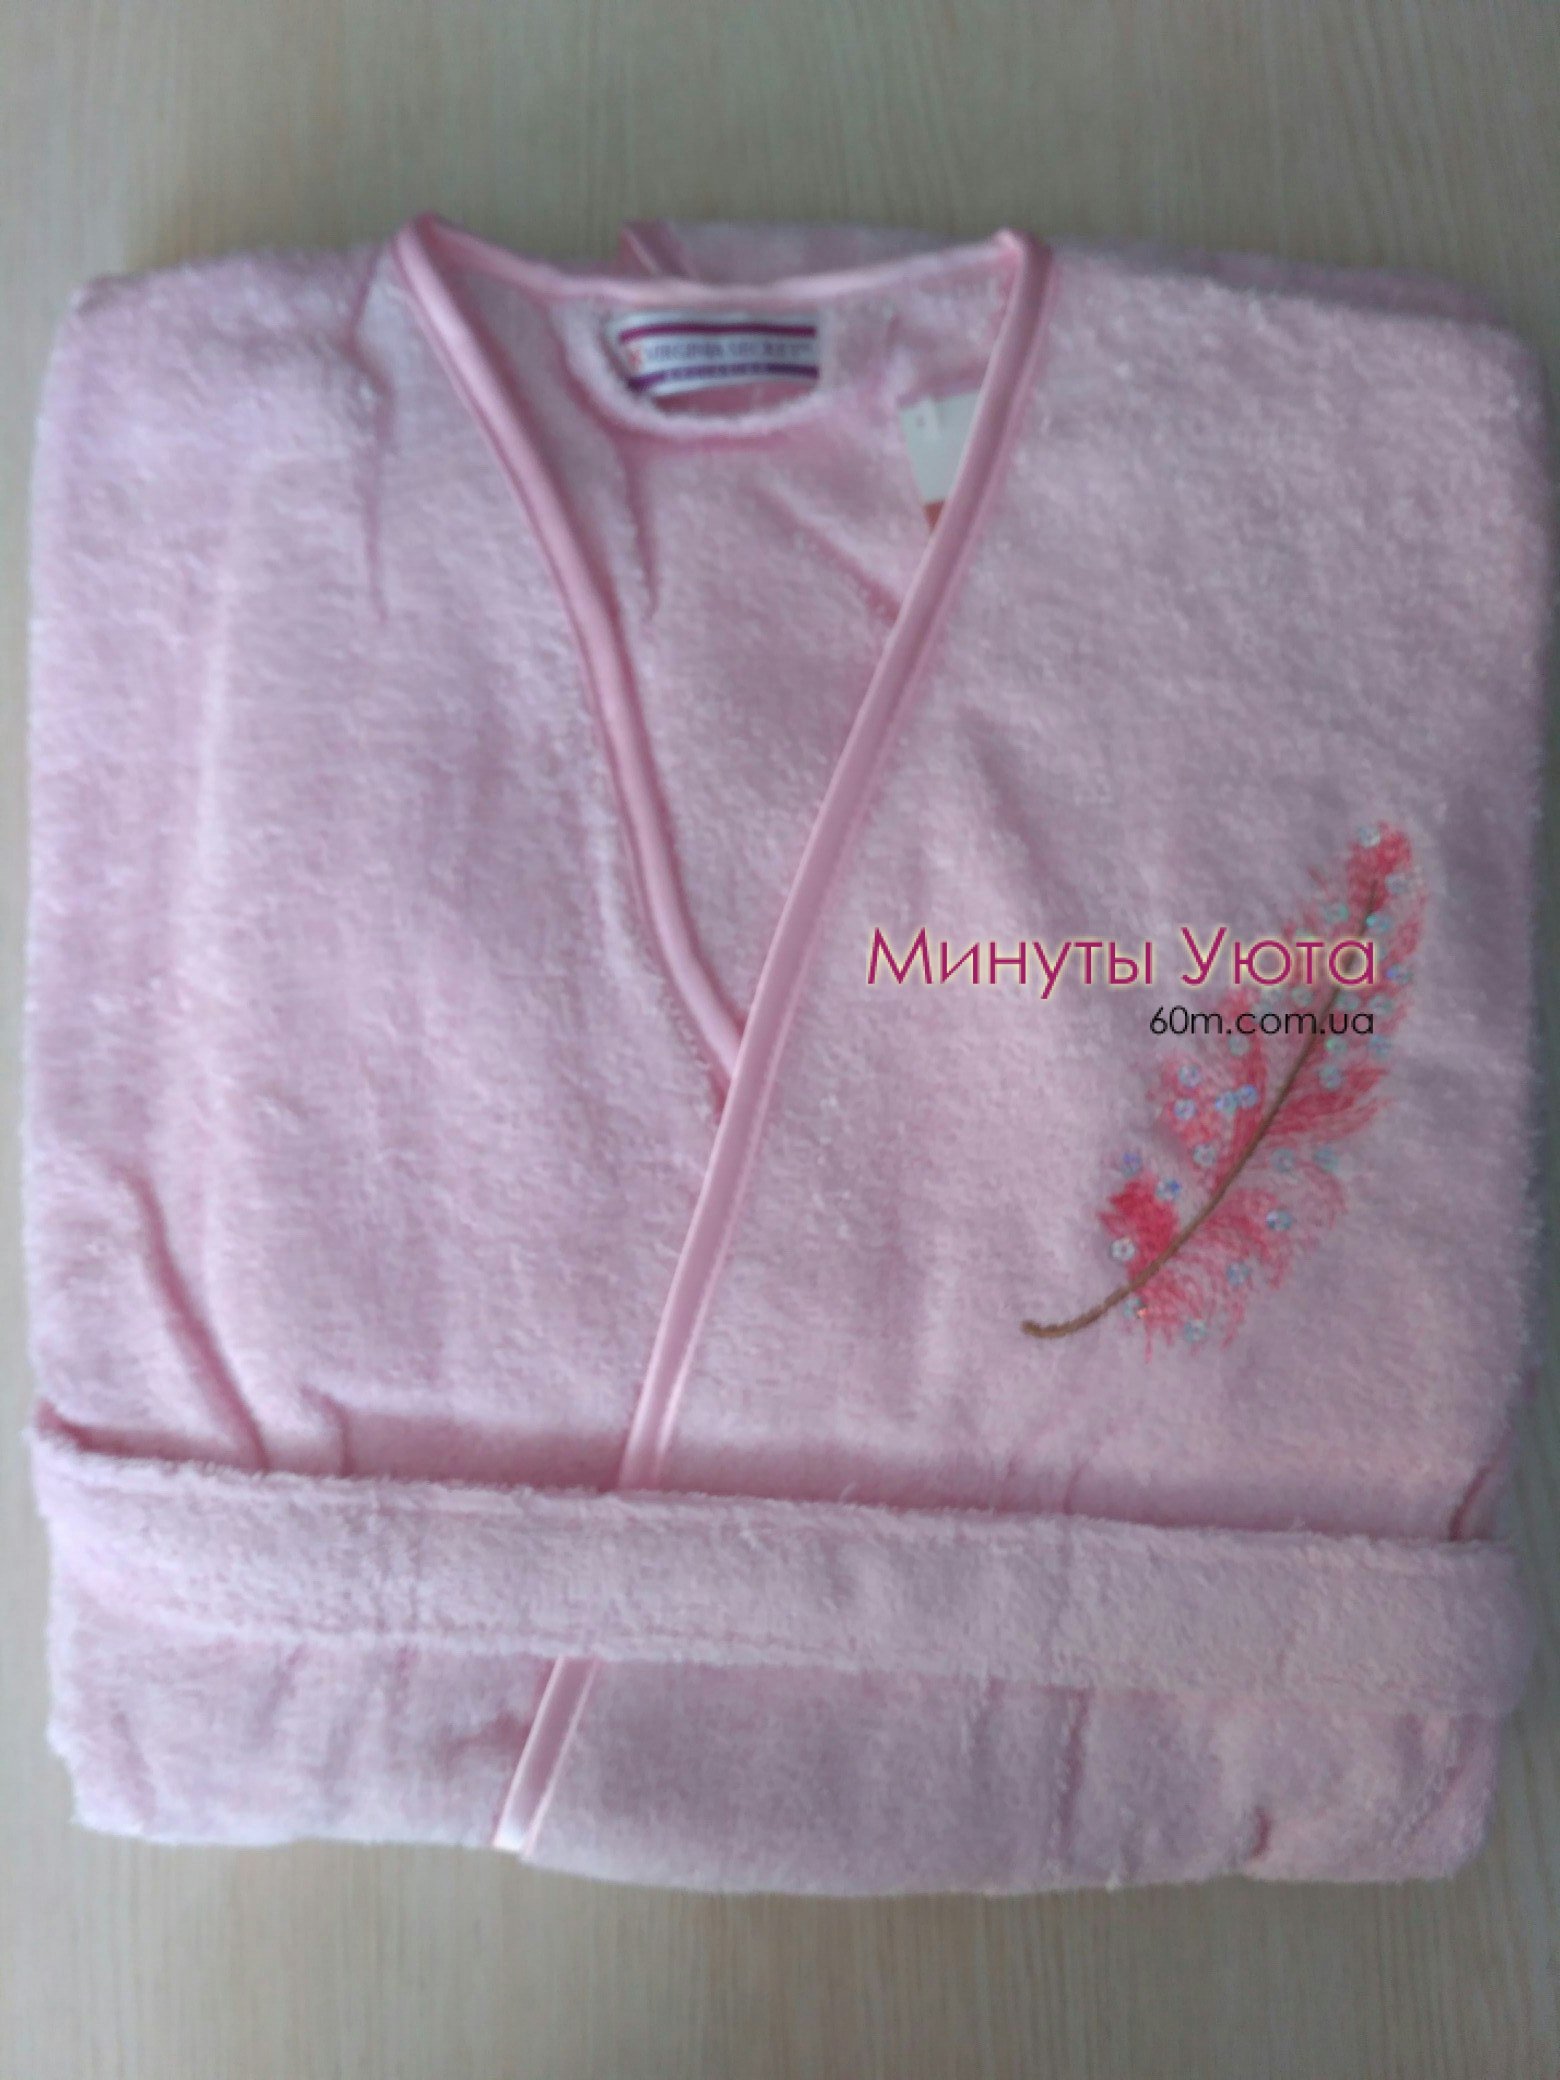 Легкий короткий халат с пером в розовом цвете 